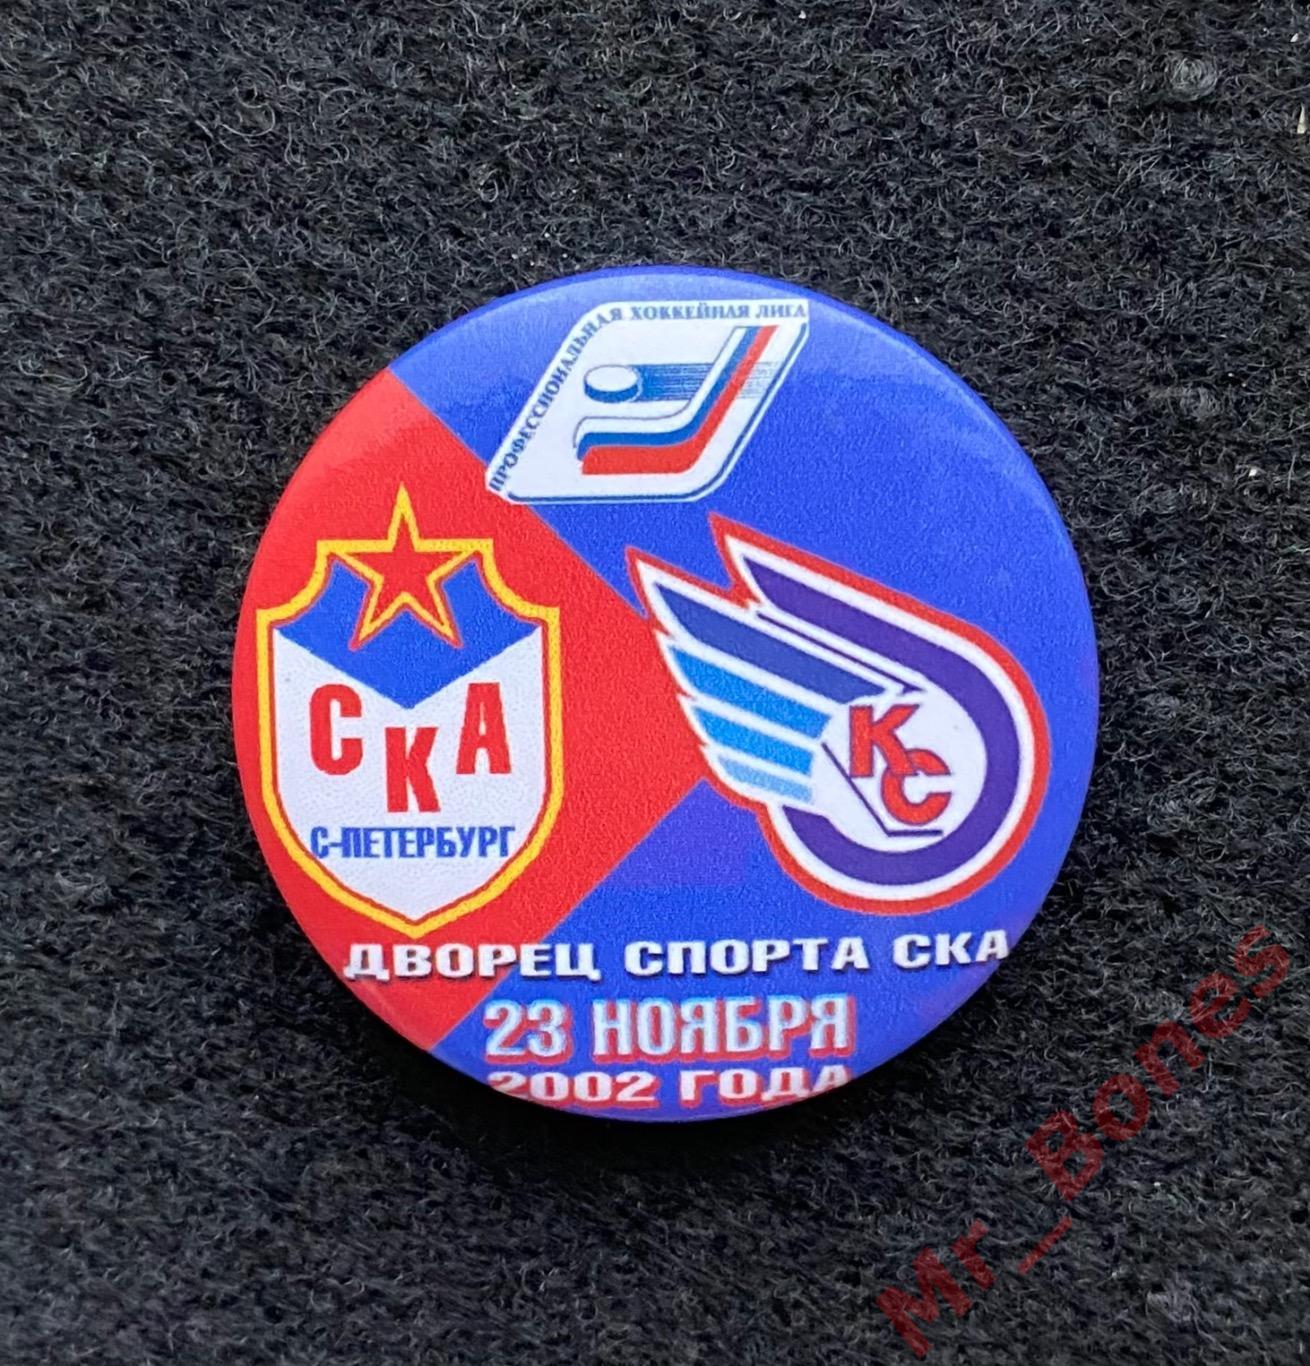 СКА - Крылья советов, сезон 2002/2003